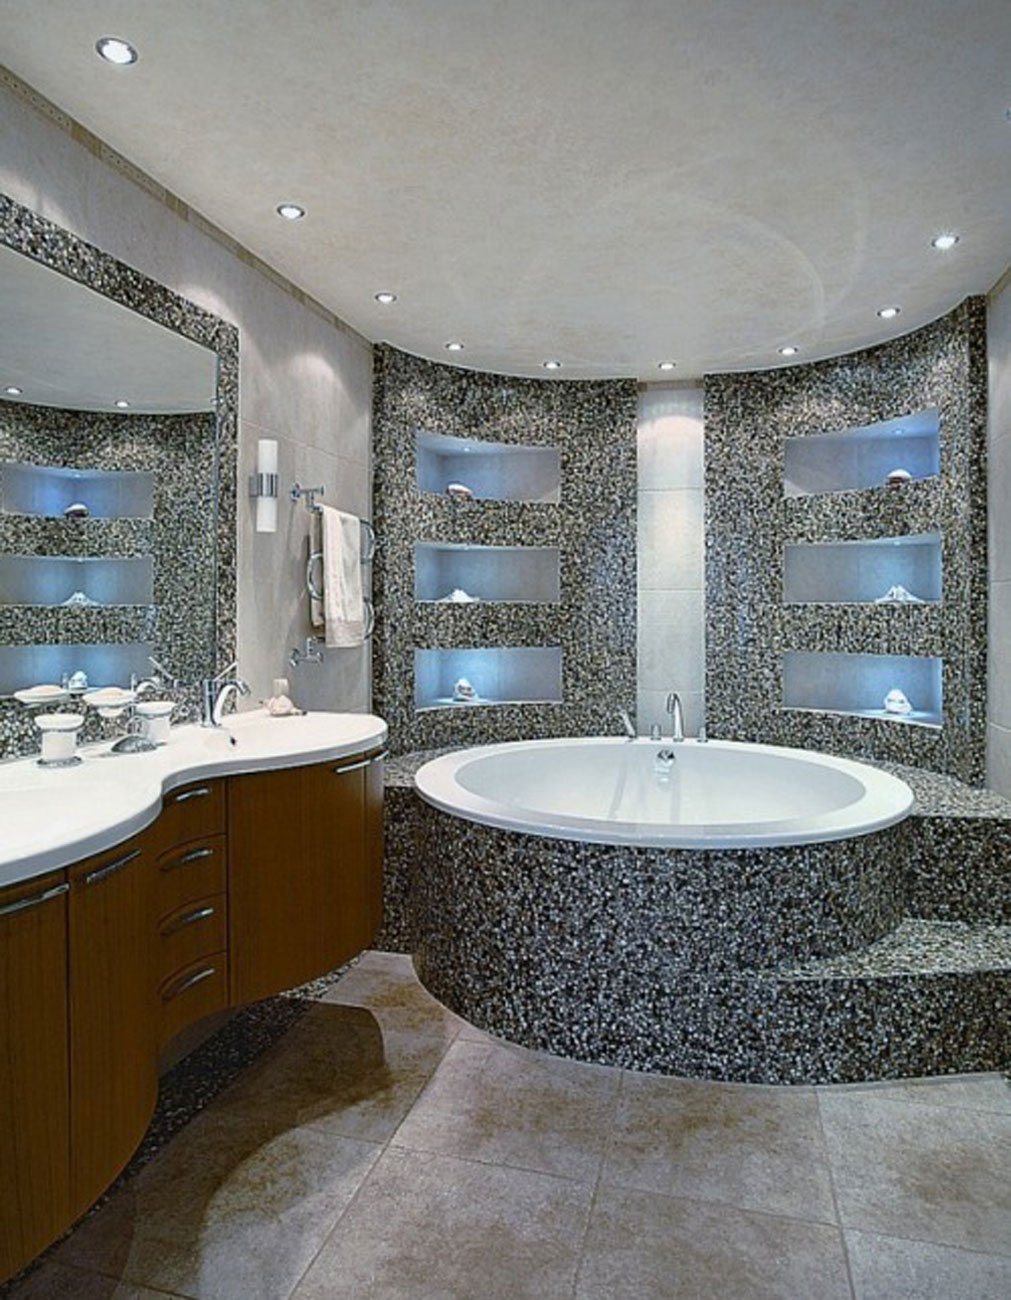 Самые красивые ванные. Красивые Ванные комнаты. Роскошные Ванные комнаты. Красивая ваннаямкомнаиа. Роскошная ванная комната.